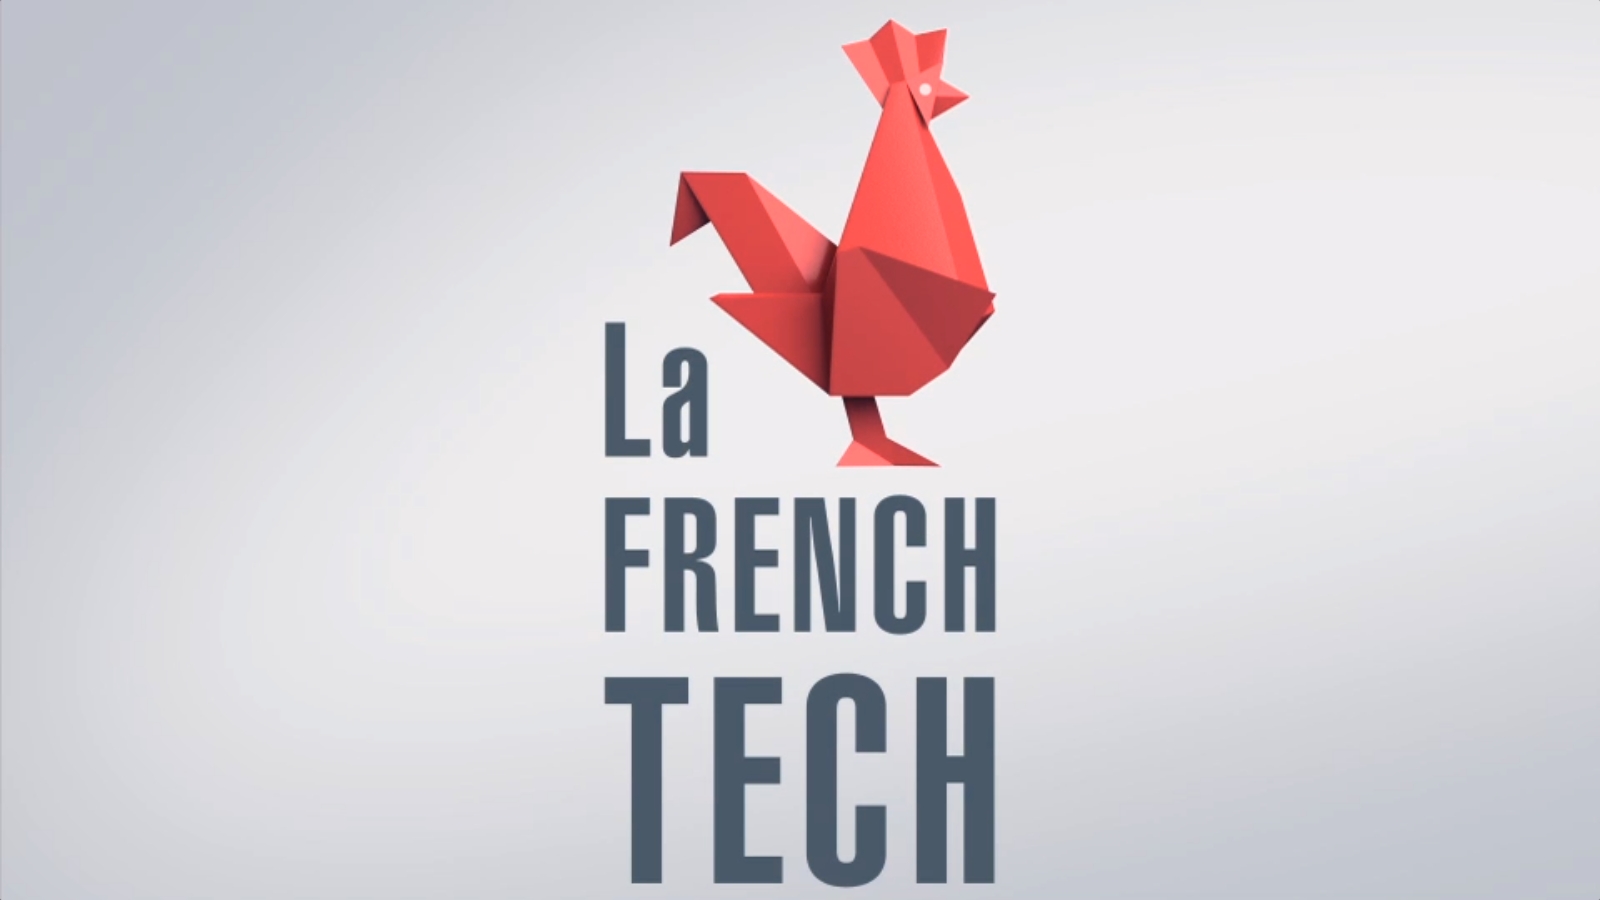 french tech dans la société de consommation